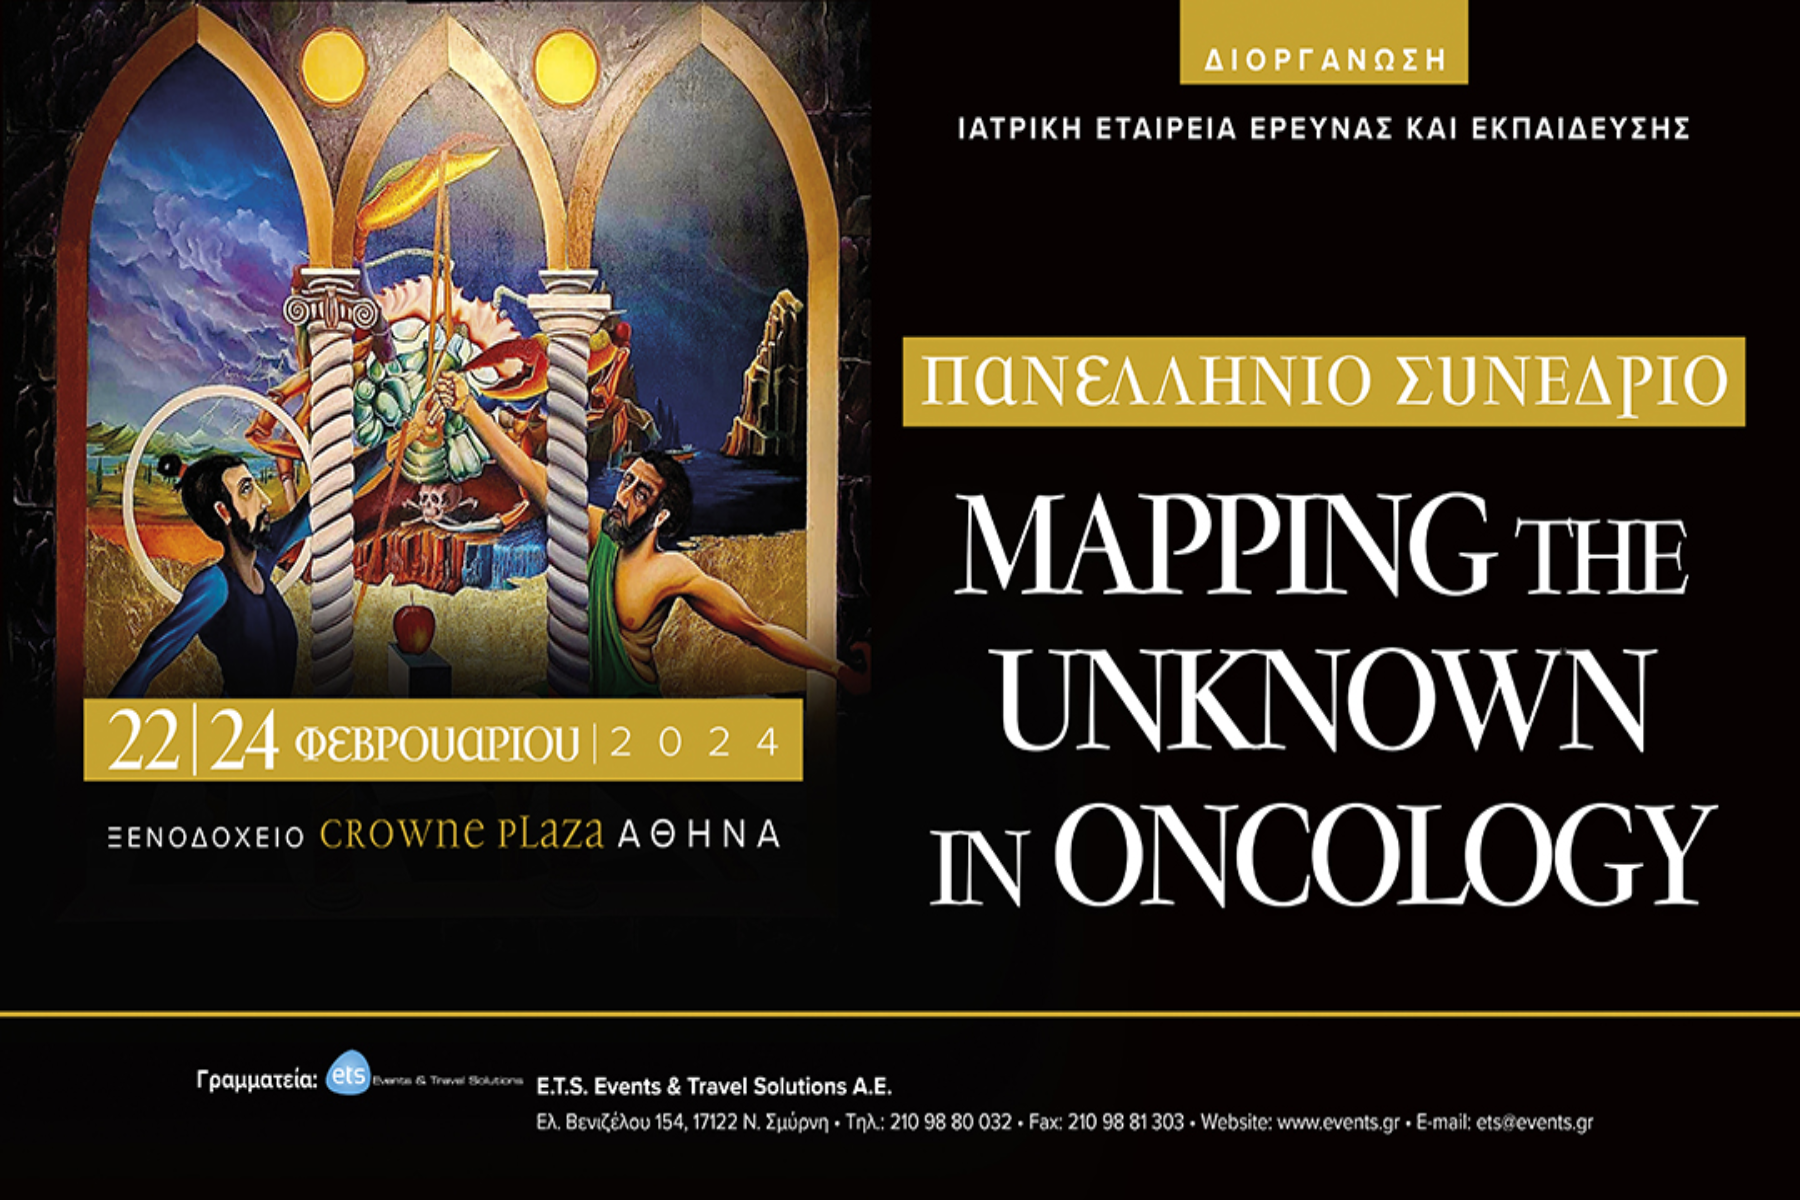 Άλμα ζωής: To «Άλμα Ζωής» στο Πανελλήνιο Συνέδριο “Mapping the Unknown in Oncology”